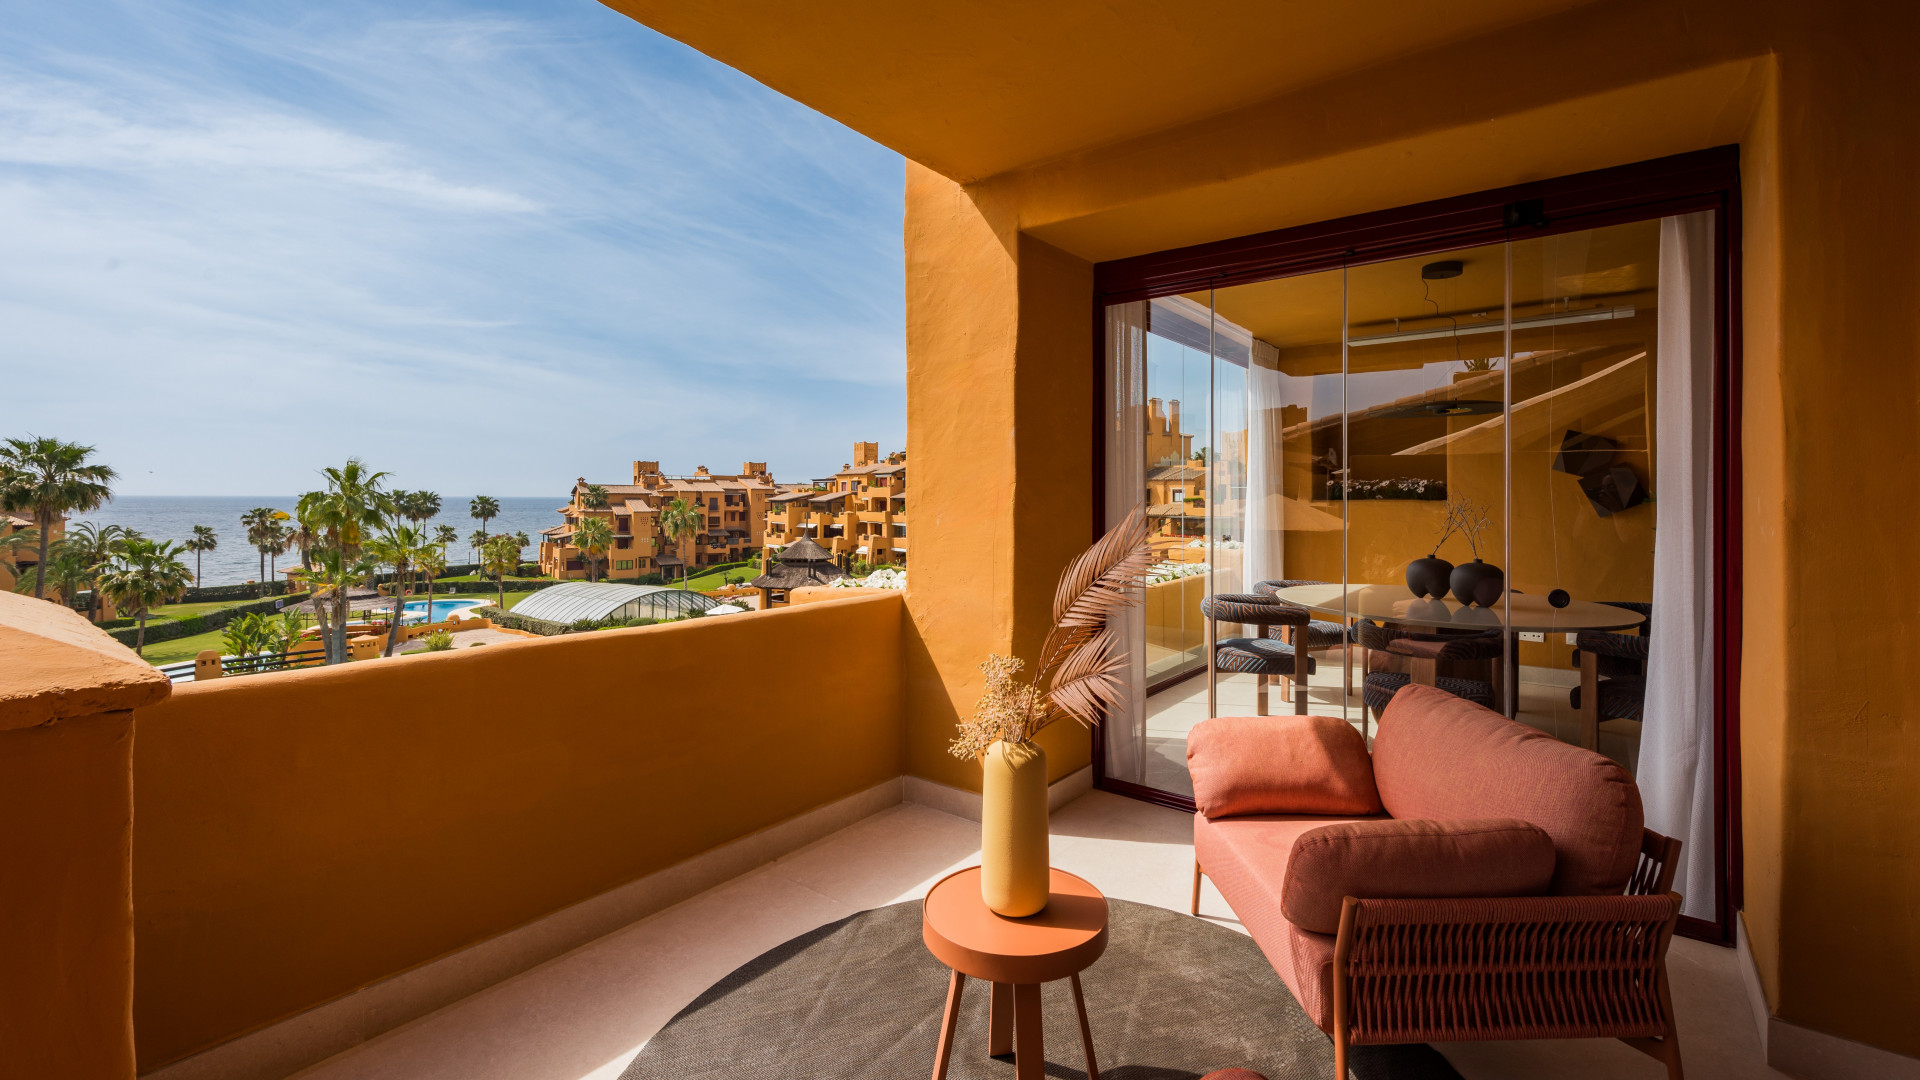 Apartamento de 3 dormitorios completamente reformado con impresionantes vistas abiertas al mar y jardines en un exclusivo complejo frente a la playa